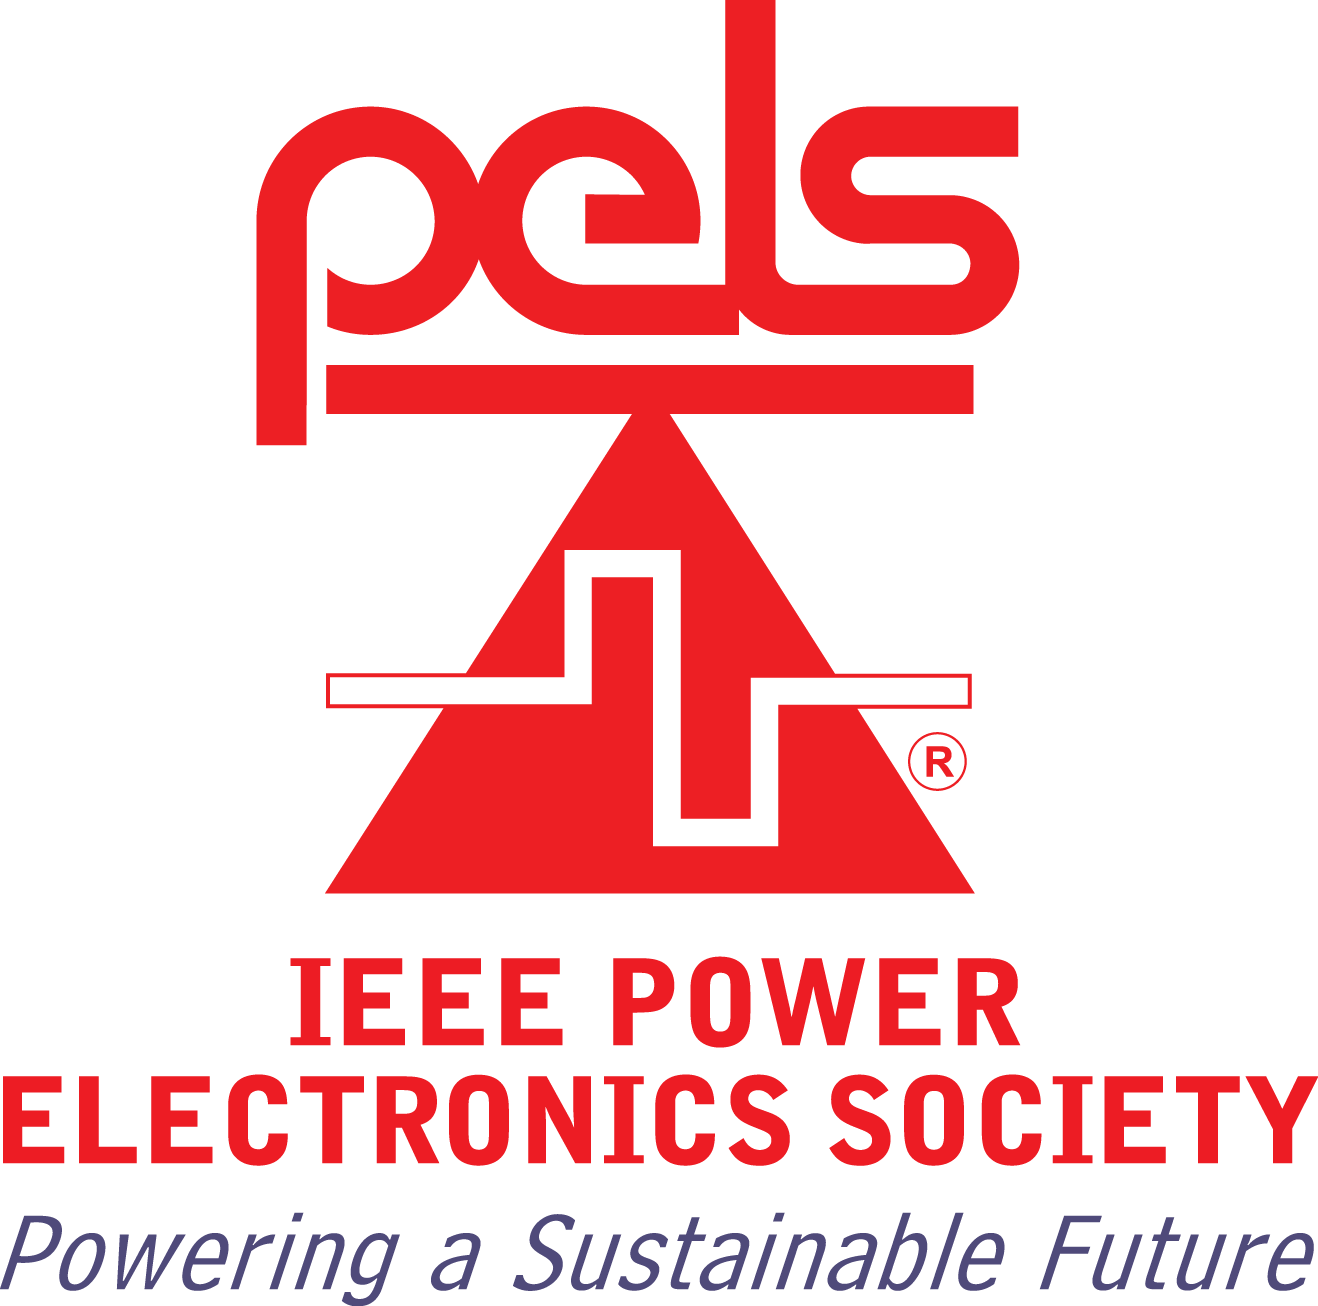 IEEE PELS